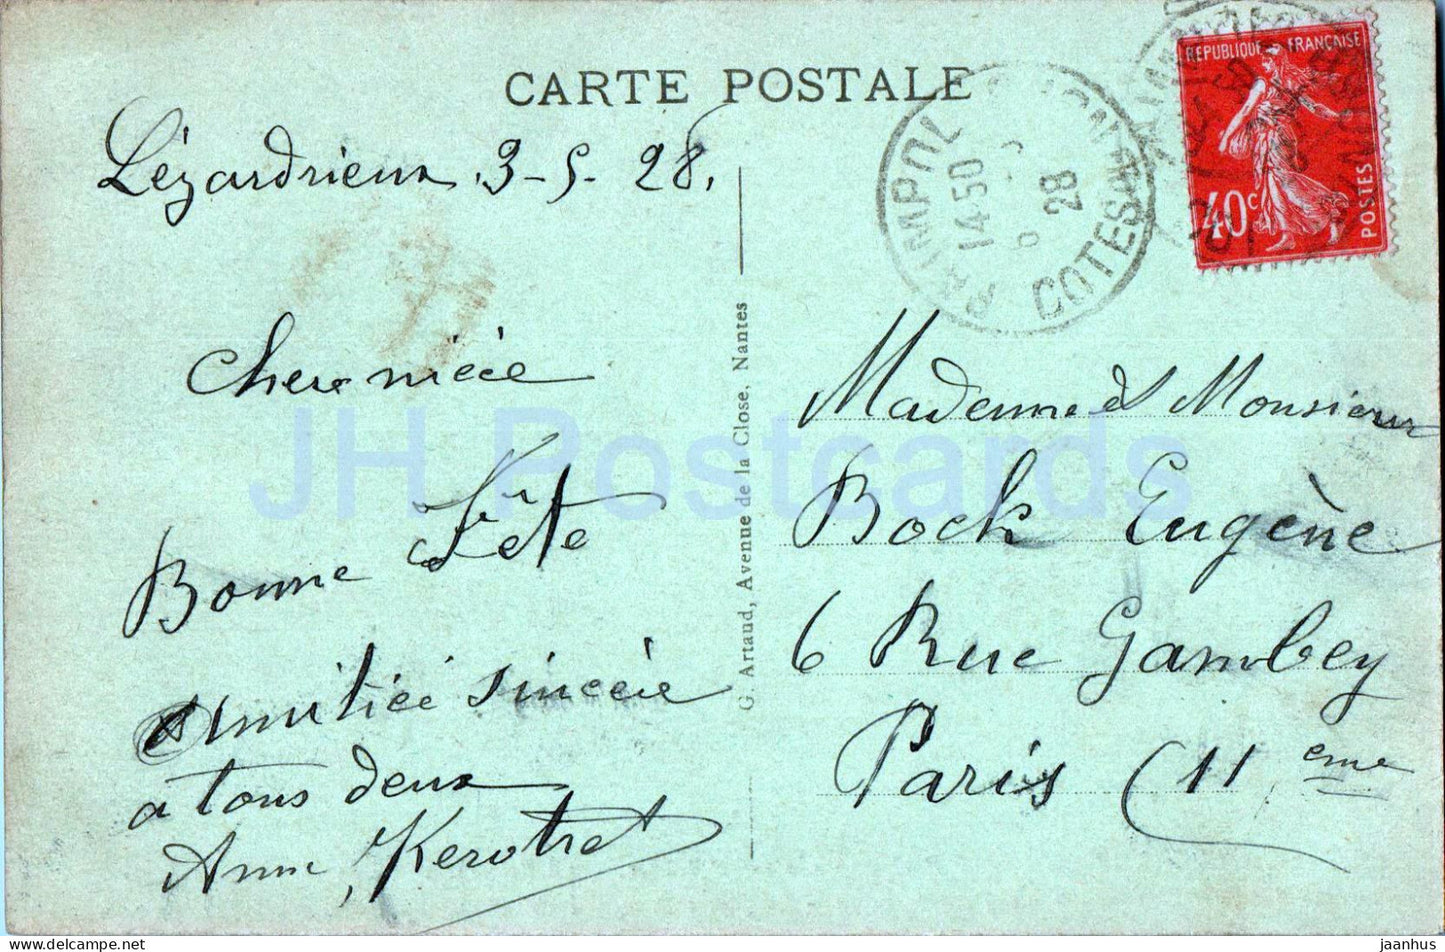 Lezardrieux - Le Pont suspendu sur le Trieux - pont - 26 - carte postale ancienne - 1928 - France - occasion 